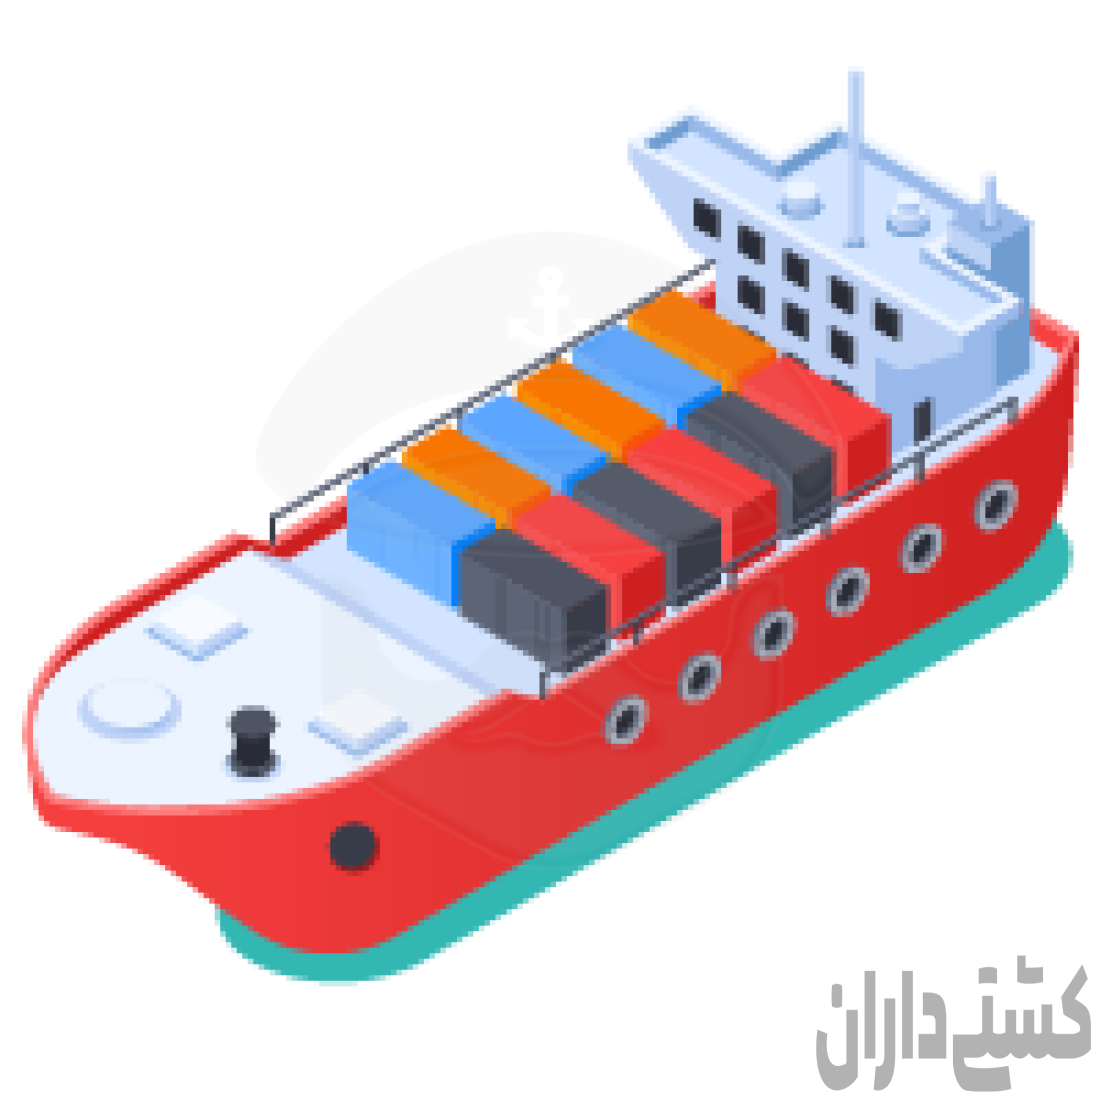 کاپتان وچبف .کشتی تجاری